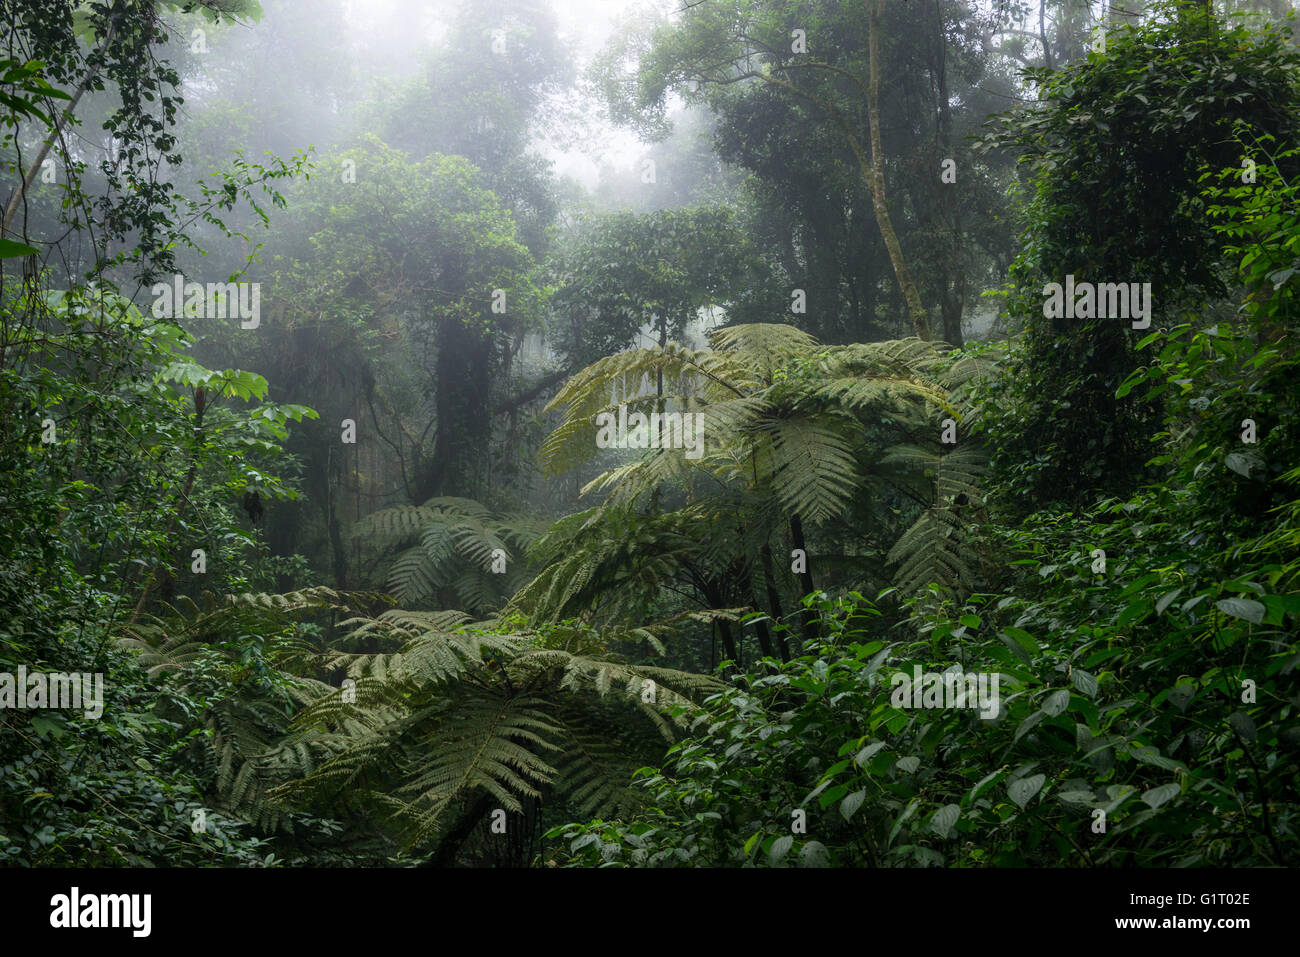 Atlantic Rainforest vegetation in Ilhabela, SE Brazil Stock Photo